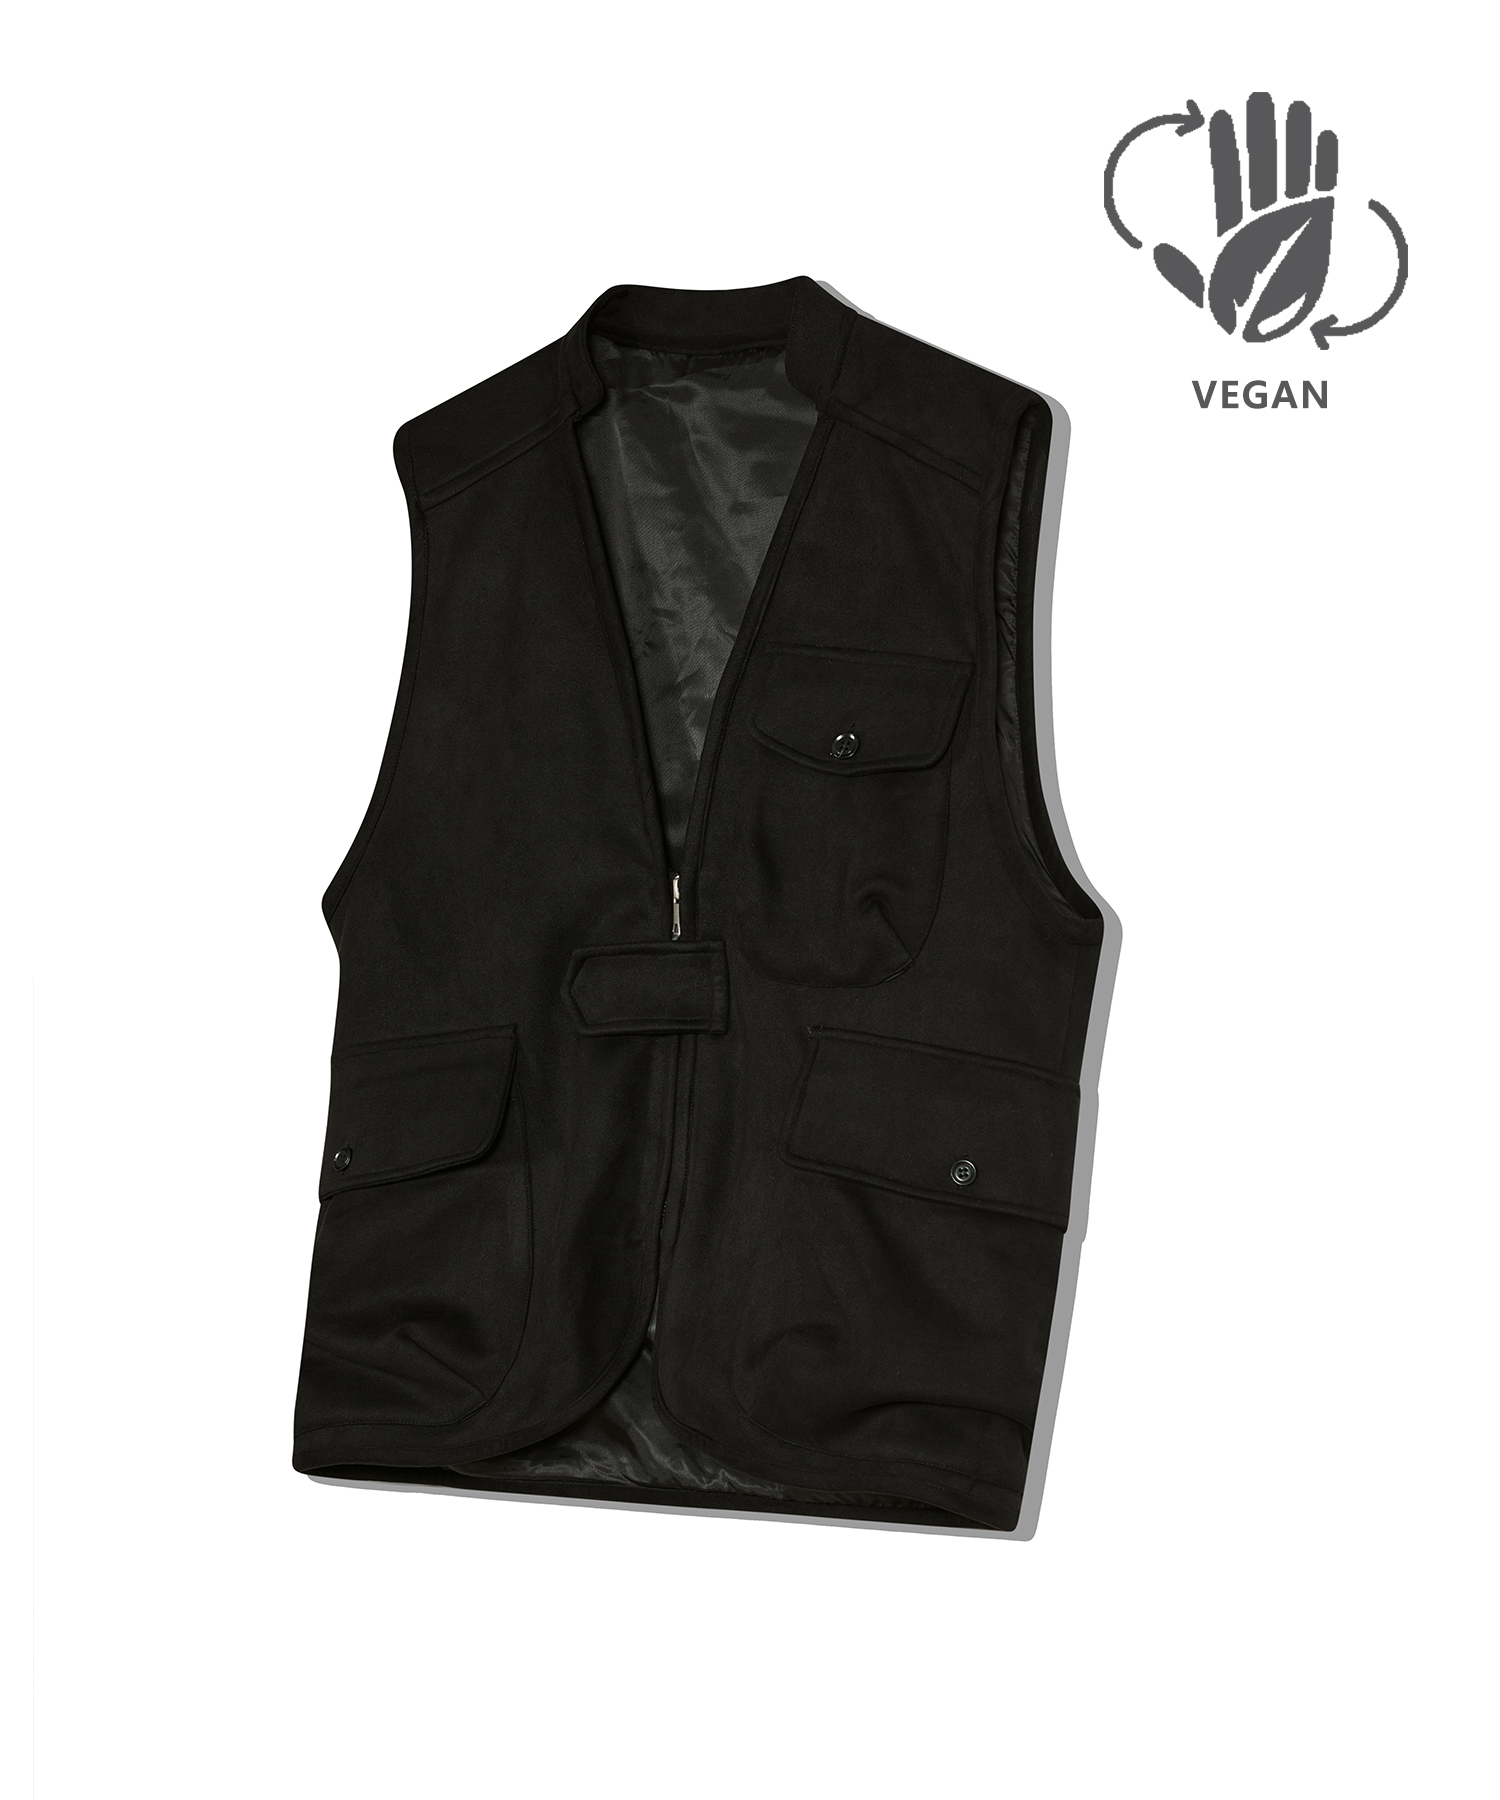 87-STAN025 [Vegan Suede] Multi Pocket Suede Vest Black